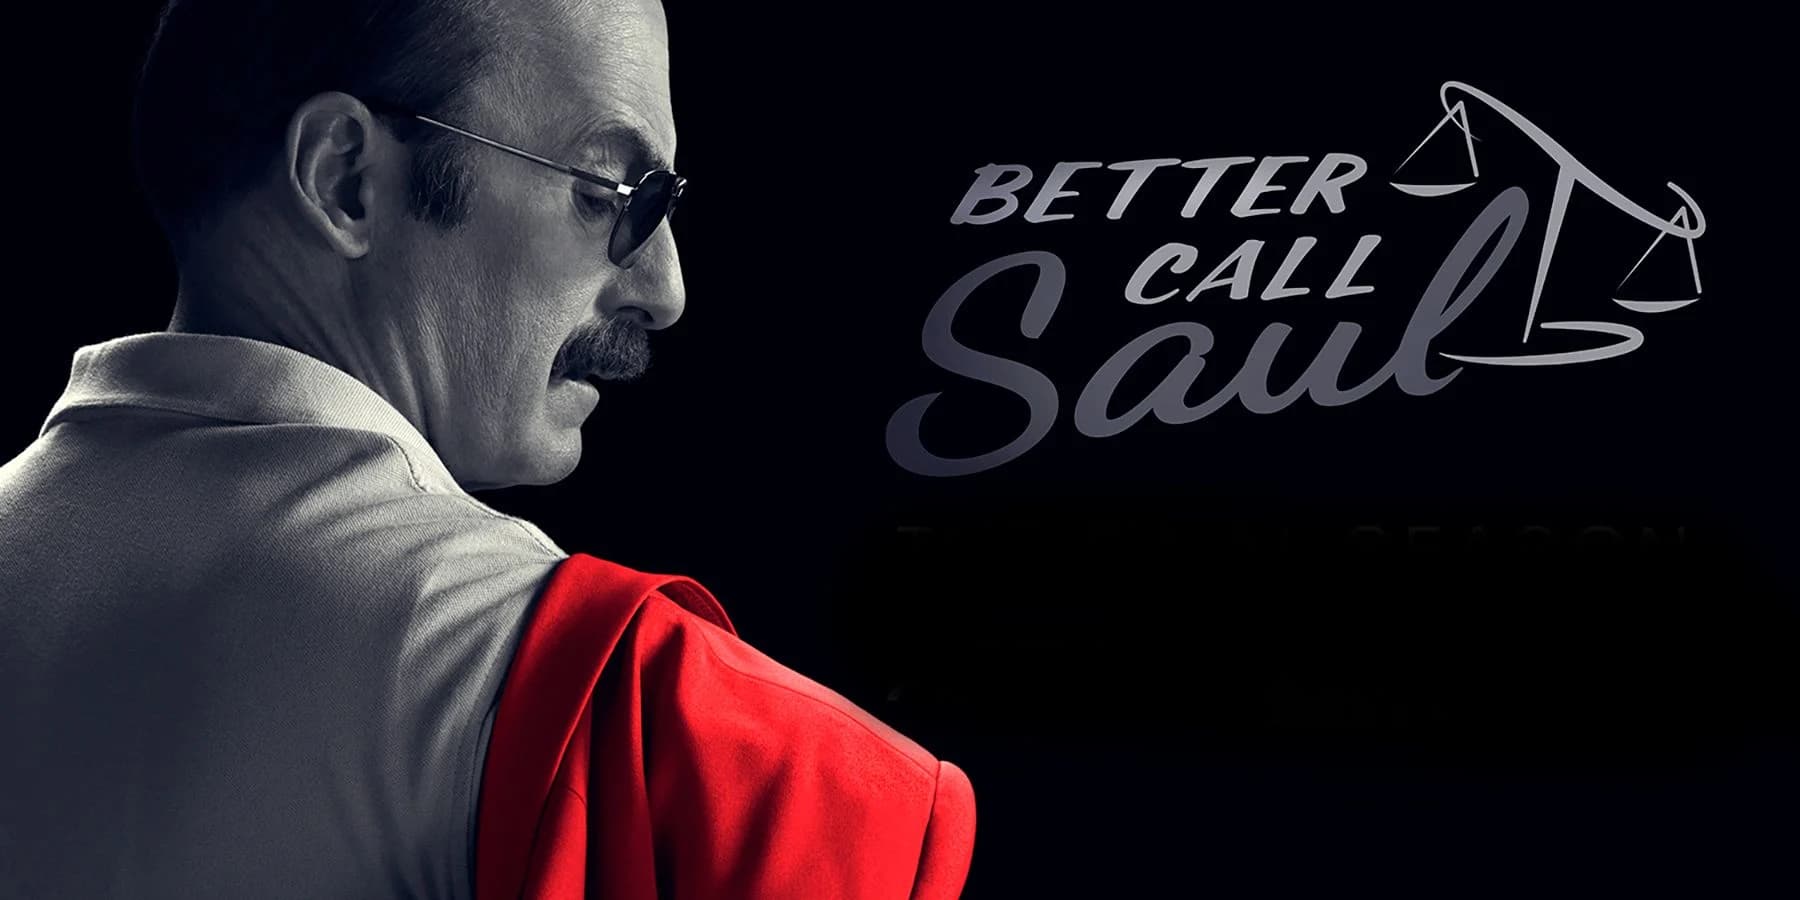 Better Call Saul último episódio tem morte impactante